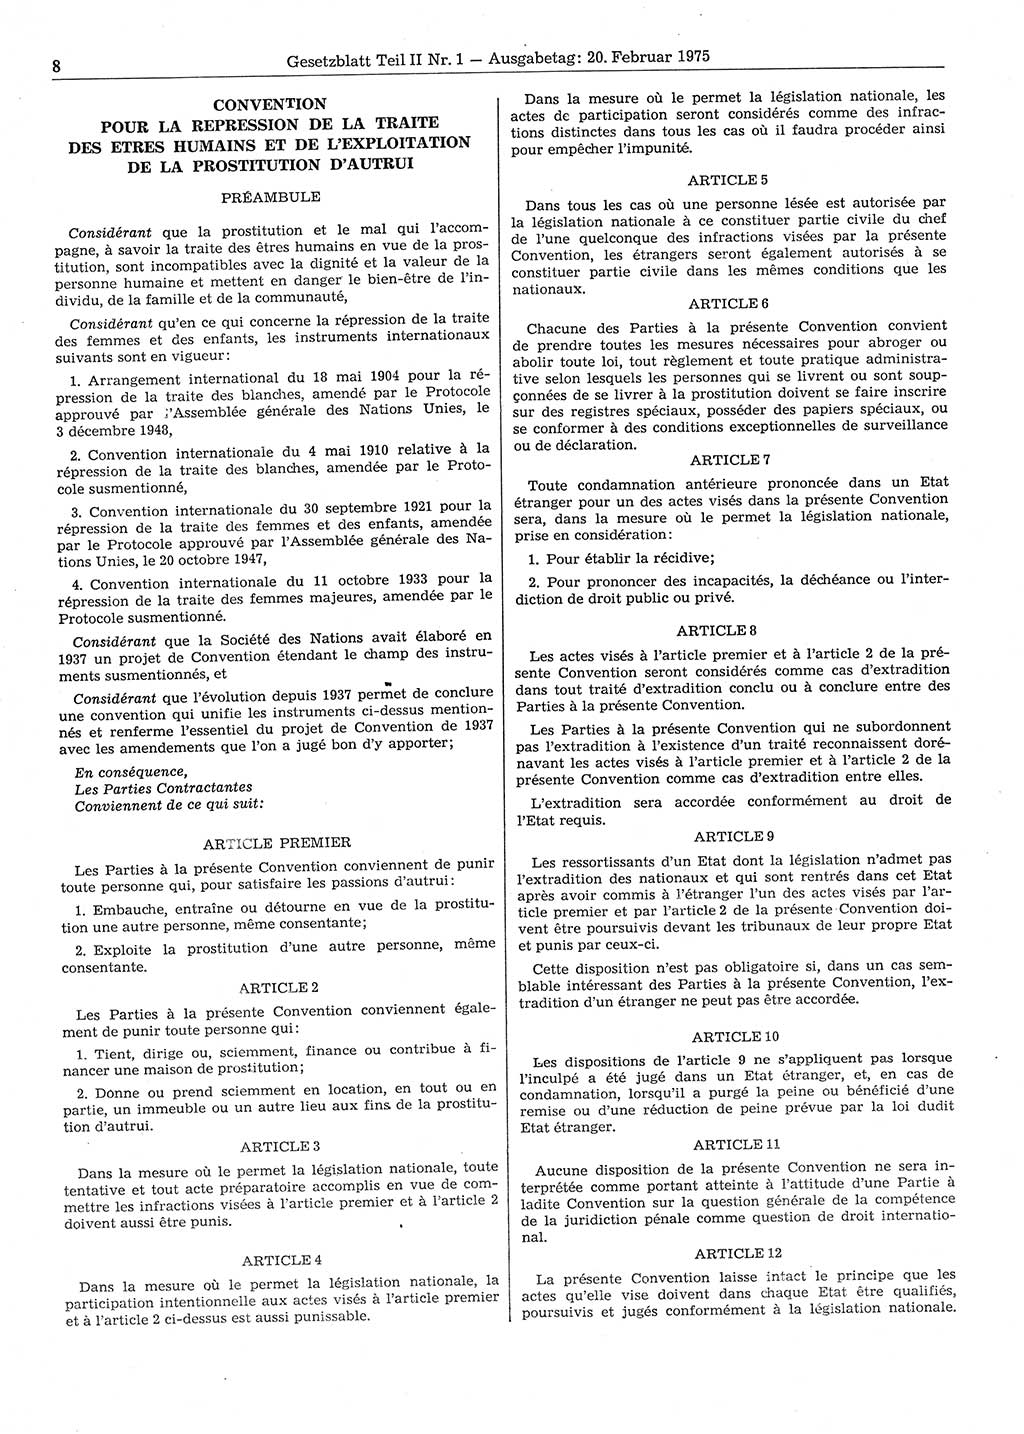 Gesetzblatt (GBl.) der Deutschen Demokratischen Republik (DDR) Teil ⅠⅠ 1975, Seite 8 (GBl. DDR ⅠⅠ 1975, S. 8)